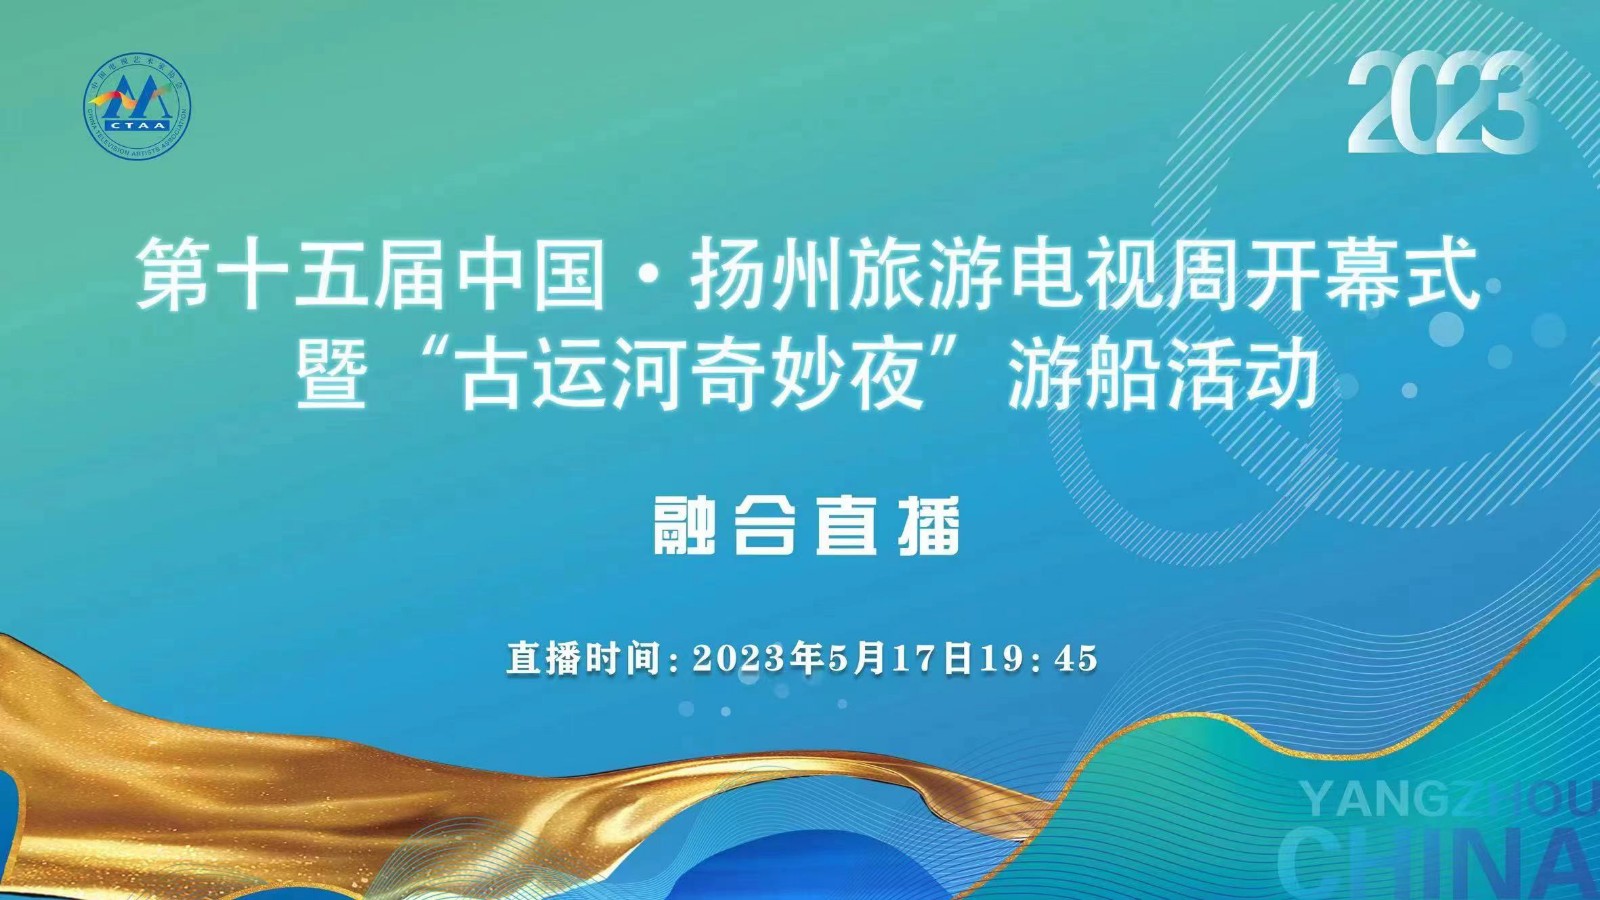 第十五届中国·扬州旅游电视周开幕式暨“古运河奇妙夜”游船活动